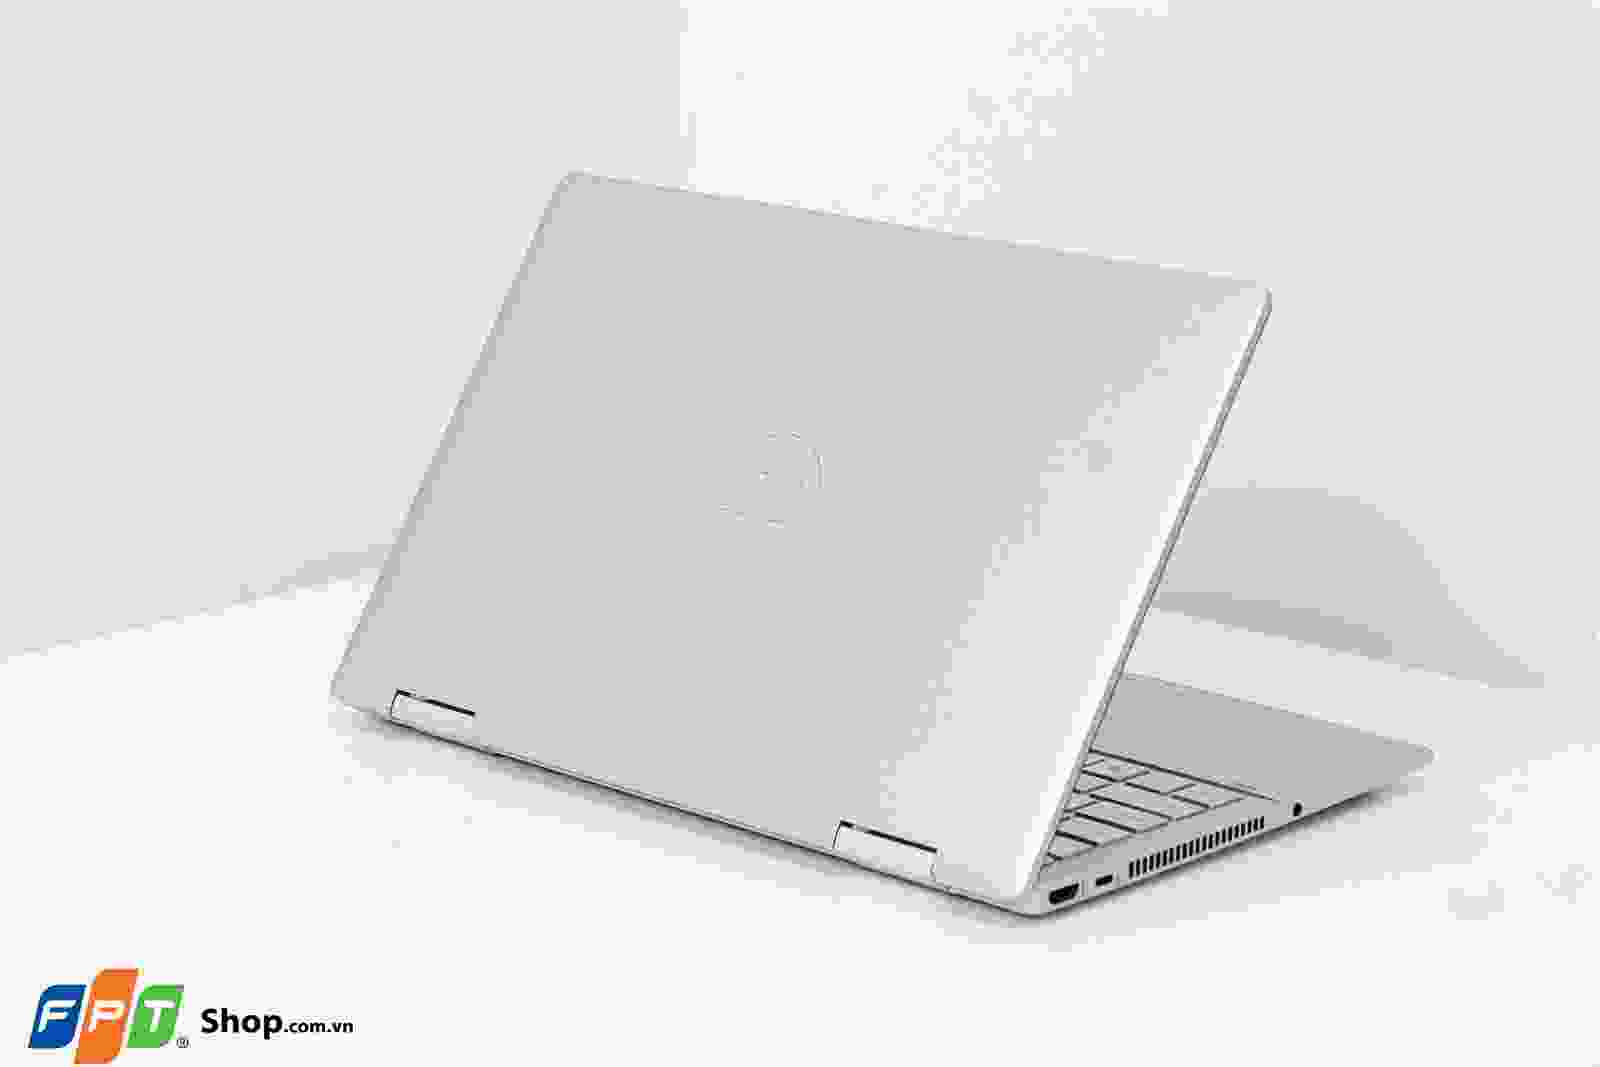 Đánh giá HP Pavilion X360 14 (2022): Bạn đang muốn tìm kiếm một chiếc laptop chất lượng và hiệu suất tốt, để giúp bạn hoàn thành mọi công việc một cách hiệu quả? Đánh giá HP Pavilion X360 14 (2022) sẽ giúp bạn tìm kiếm được chiếc laptop ưng ý nhất với nhiều tính năng đáng chú ý và thiết kế đẹp mắt. Tìm hiểu ngay hôm nay bằng cách nhấp vào hình!